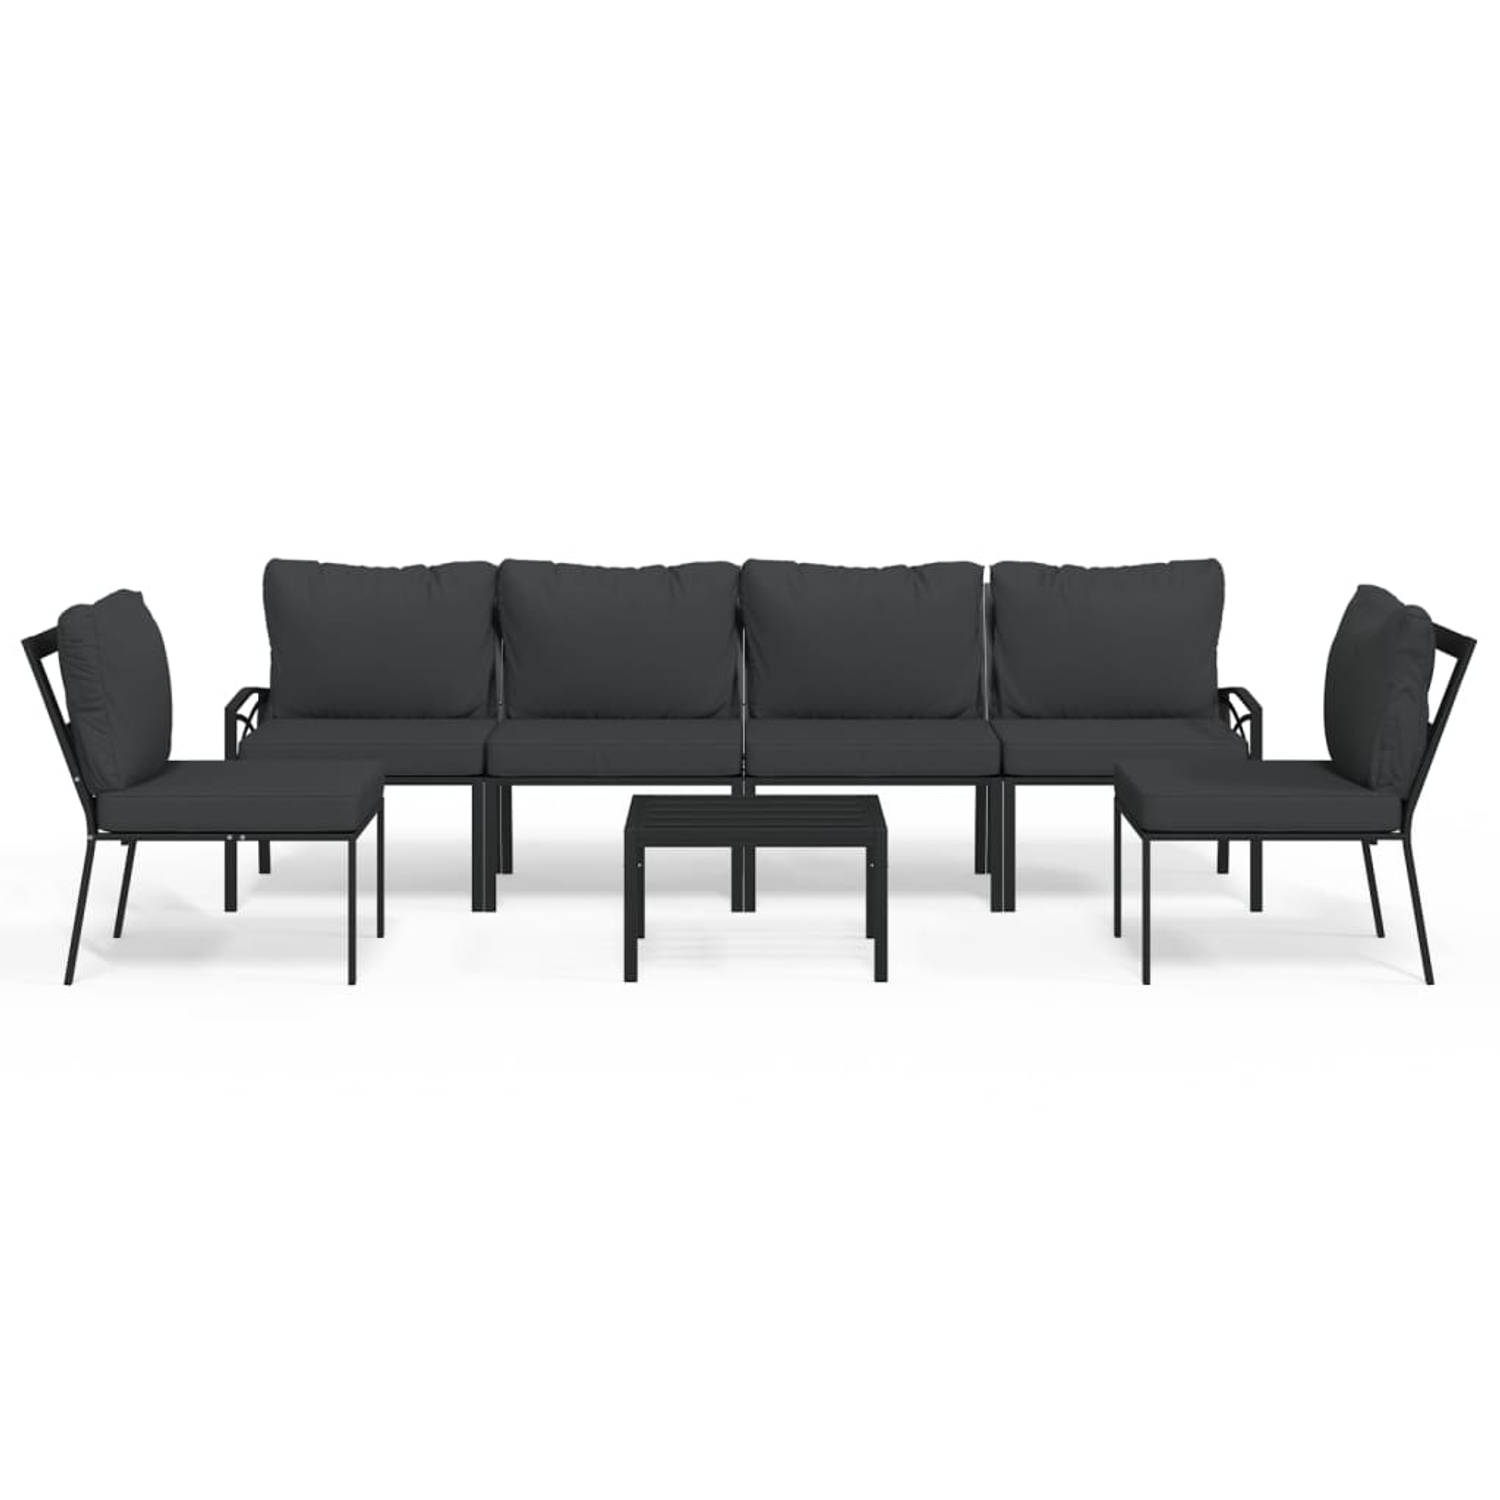 The Living Store Loungeset Staal - Zwart - 2x bijzetstoel + 4x middenstoel + 1x tafel - Comfortabel zitcomfort - Stevig